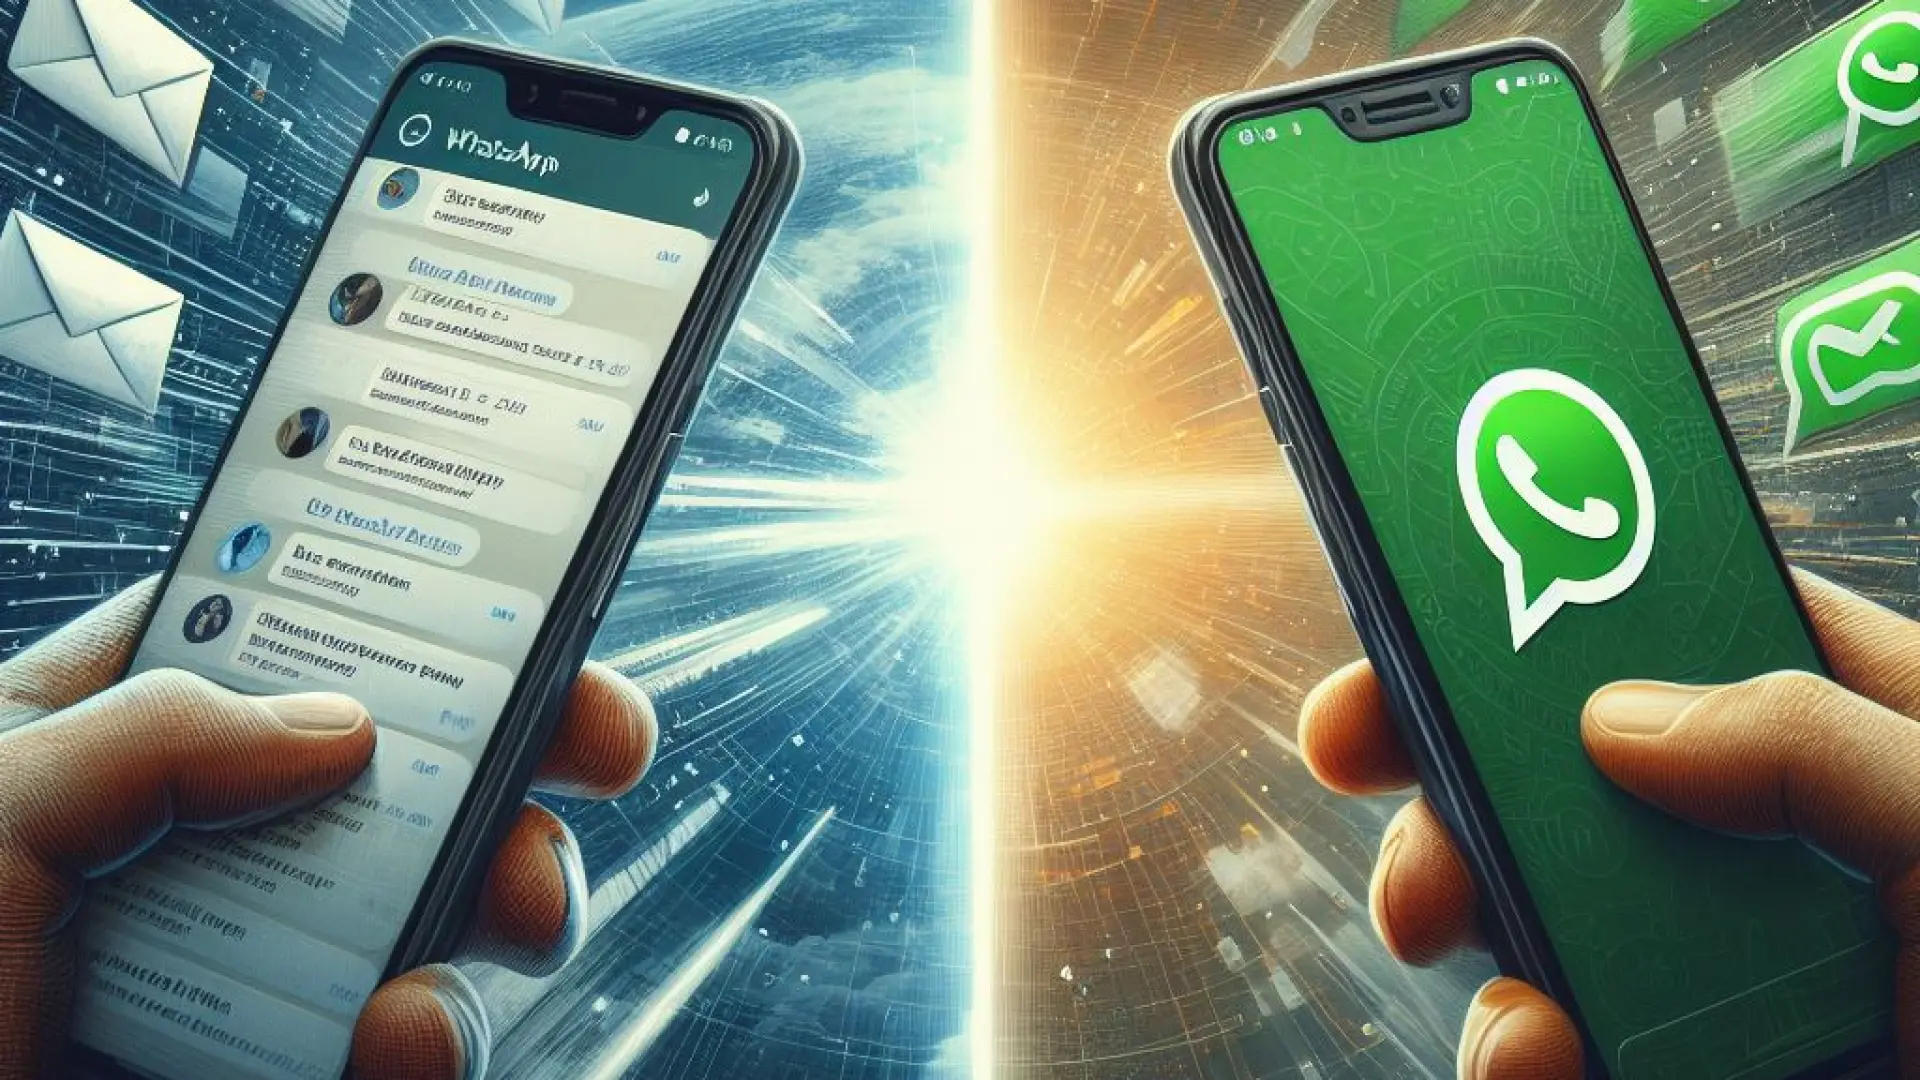 WhatsApp te permitirá mandar mensajes a otras aplicaciones como Telegram o Facebook Messenger a partir de hoy